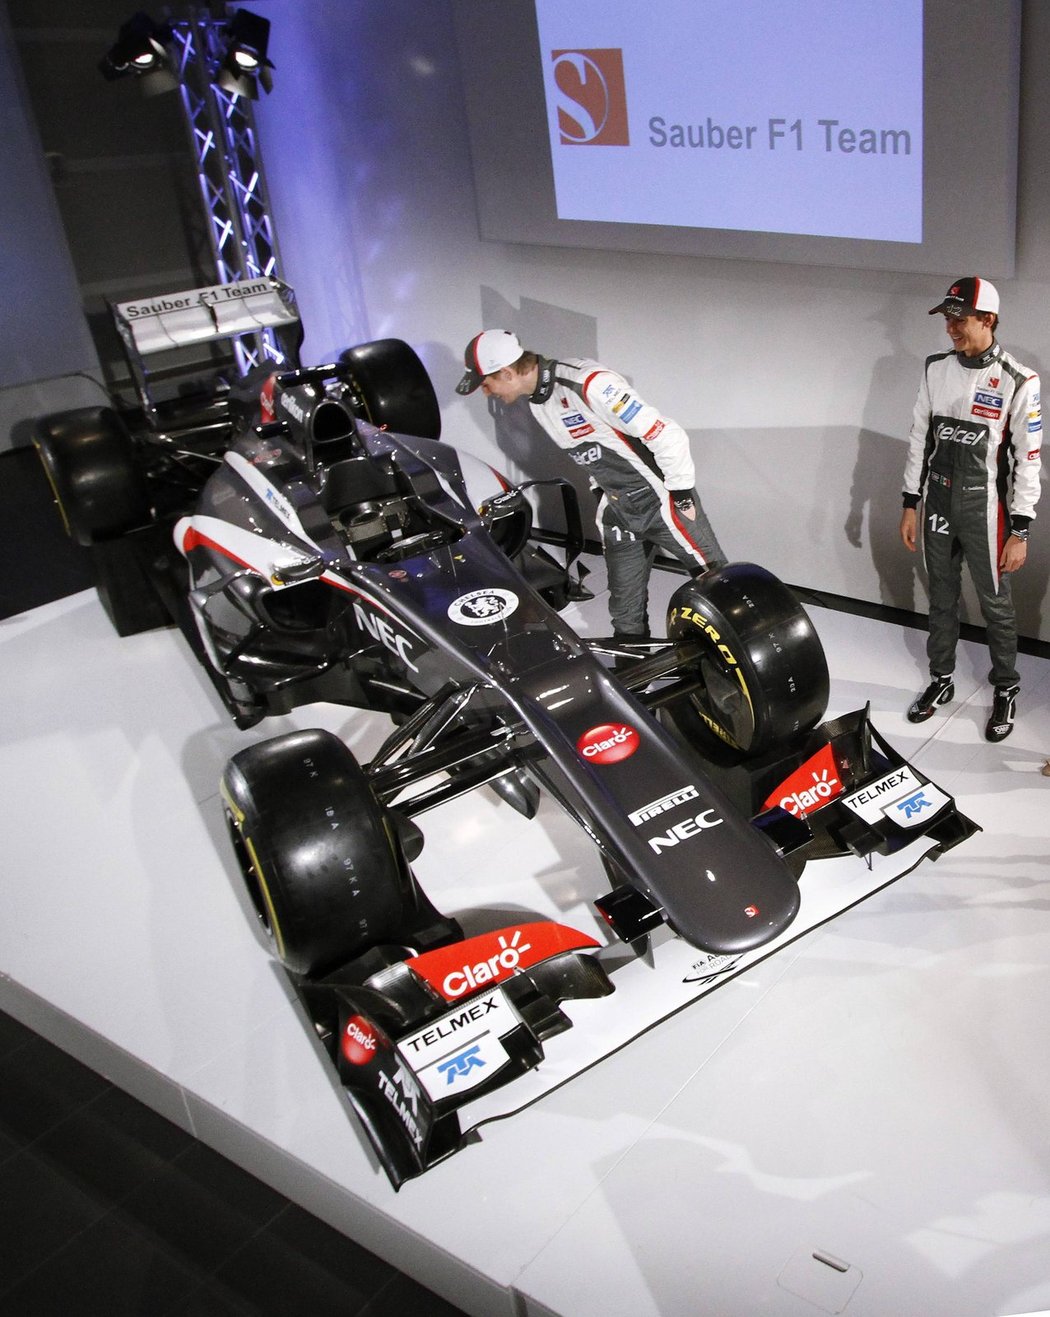 Ve švýcarském Hinwillu představili Sauber svůj monopost C32. Oproti svému předchůdci má šedivou barvu, hladší příď a menší bočnice. Do týmu přišel Nico Hülkenberg z Force Indie a z GP2 povýšil Esteban Gutiérrez.